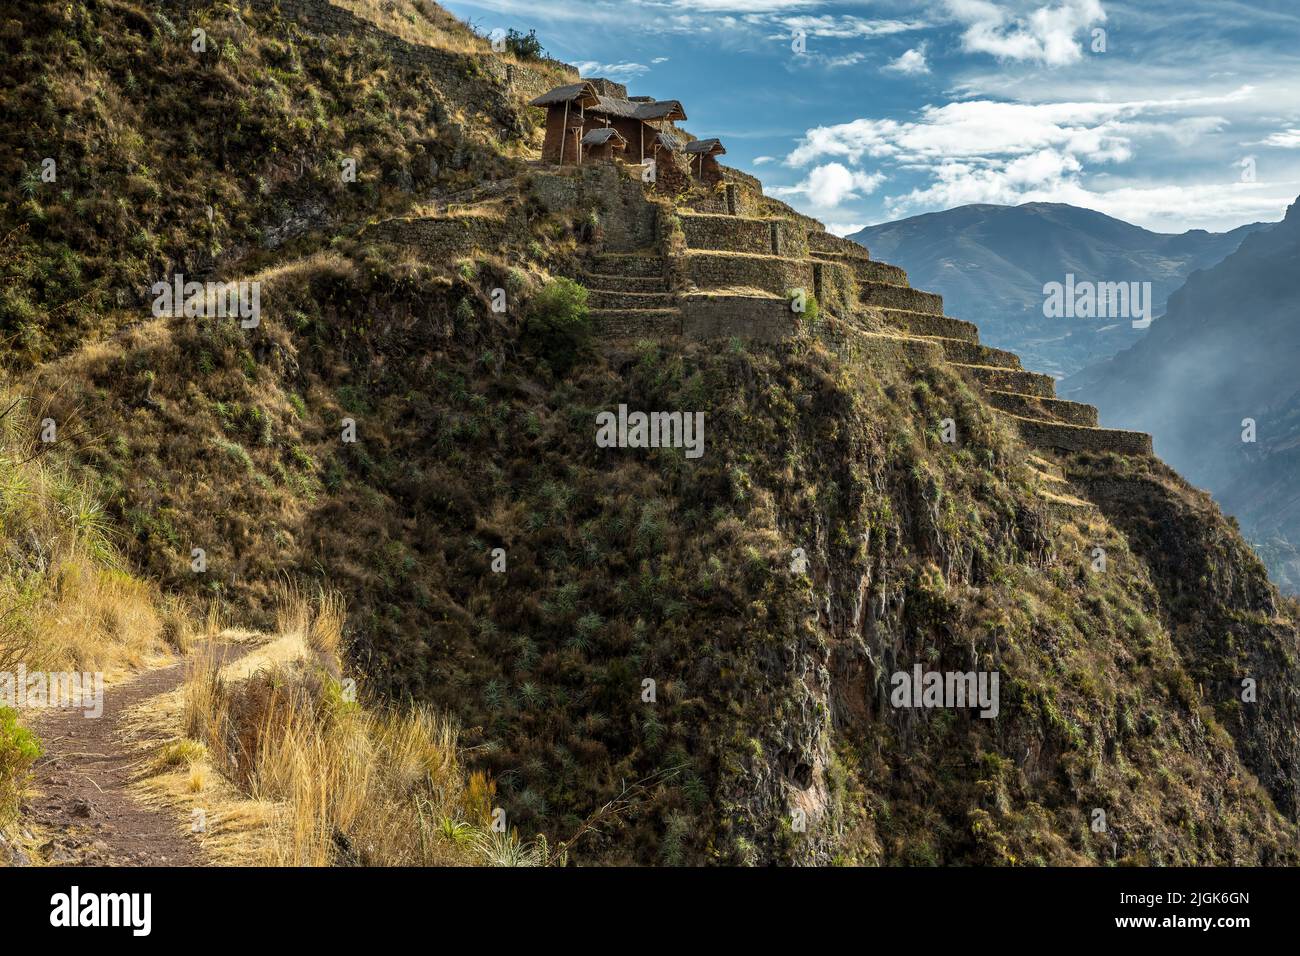 Edificios y terrazas agrícolas en un acantilado, Pisac ruinas incas, Pisac, Cusco, Perú Foto de stock